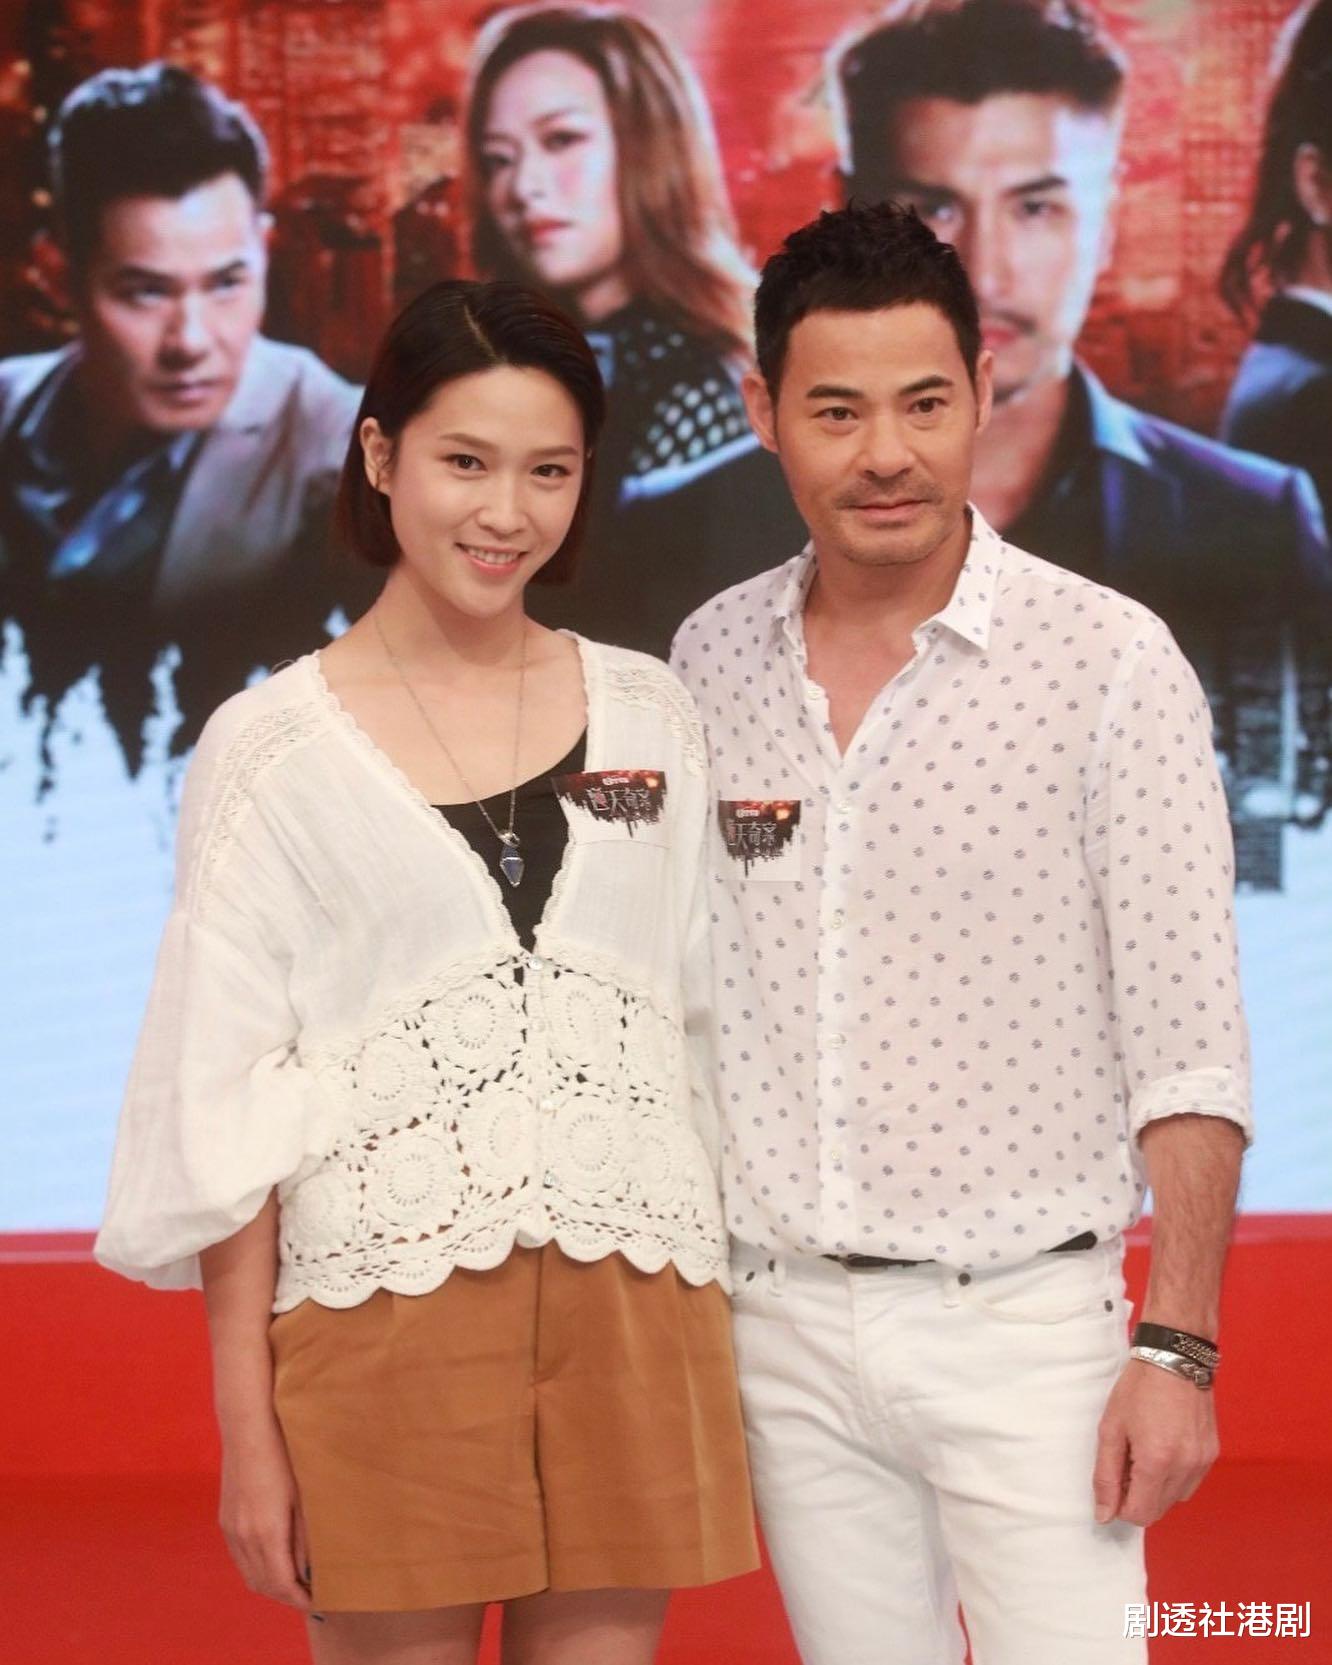 自曝從沒二人世界！36歲女演員愛情至上21歲做繼母，出演TVB新劇被贊有氣質-圖4